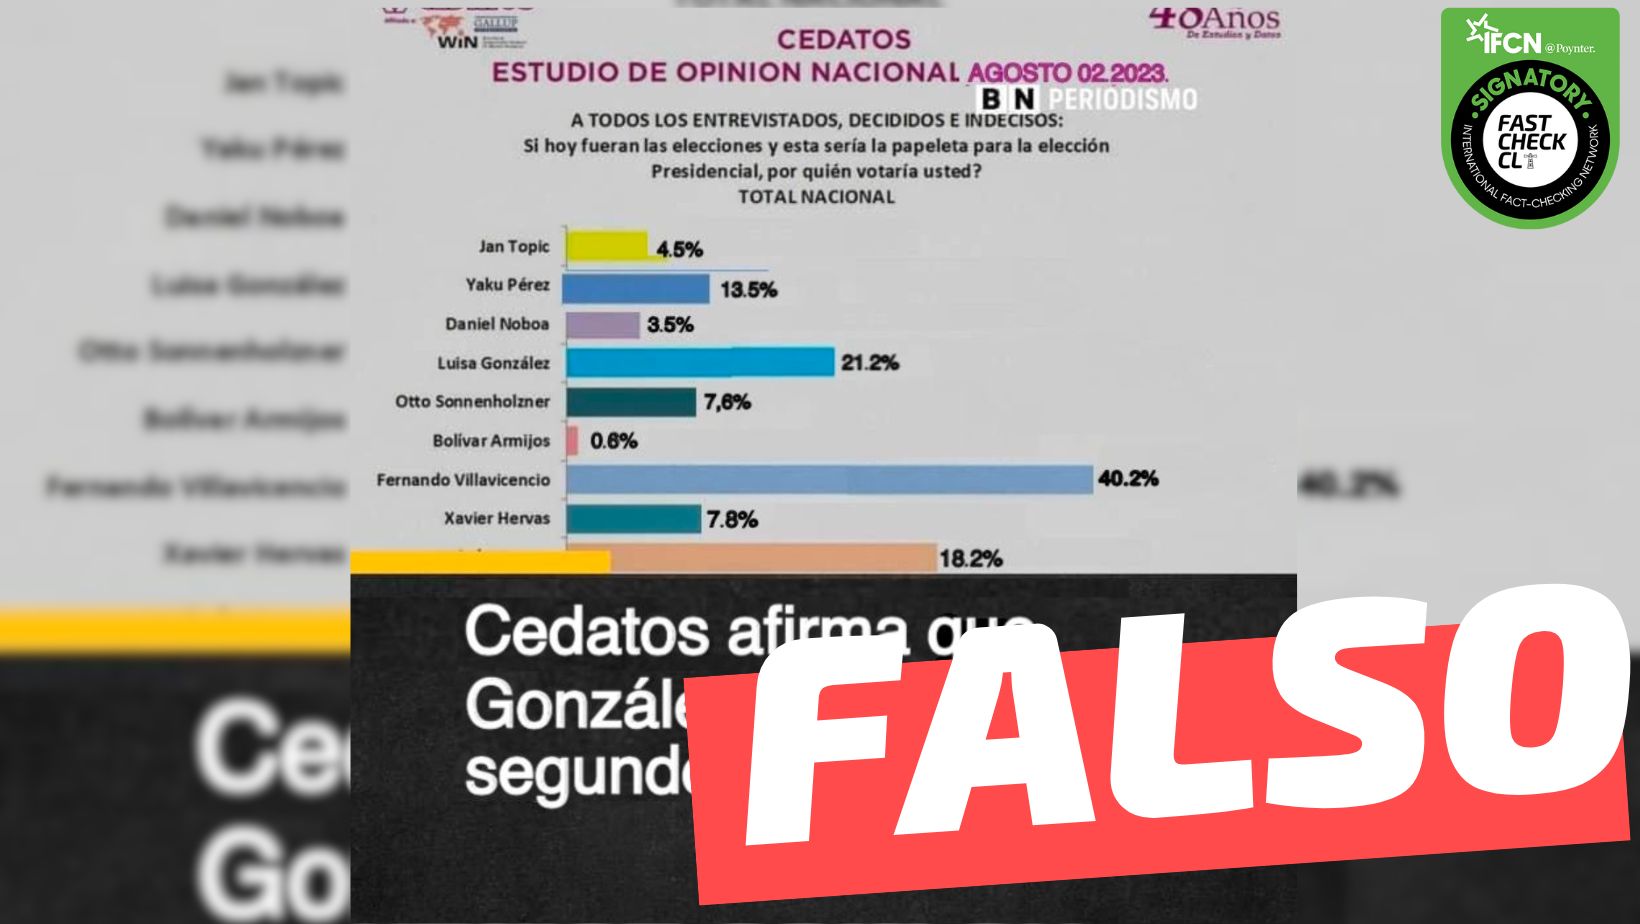 You are currently viewing “Última encuesta de Cedatos, (candidato) Fernando Villavicencio lidera”: #Falso